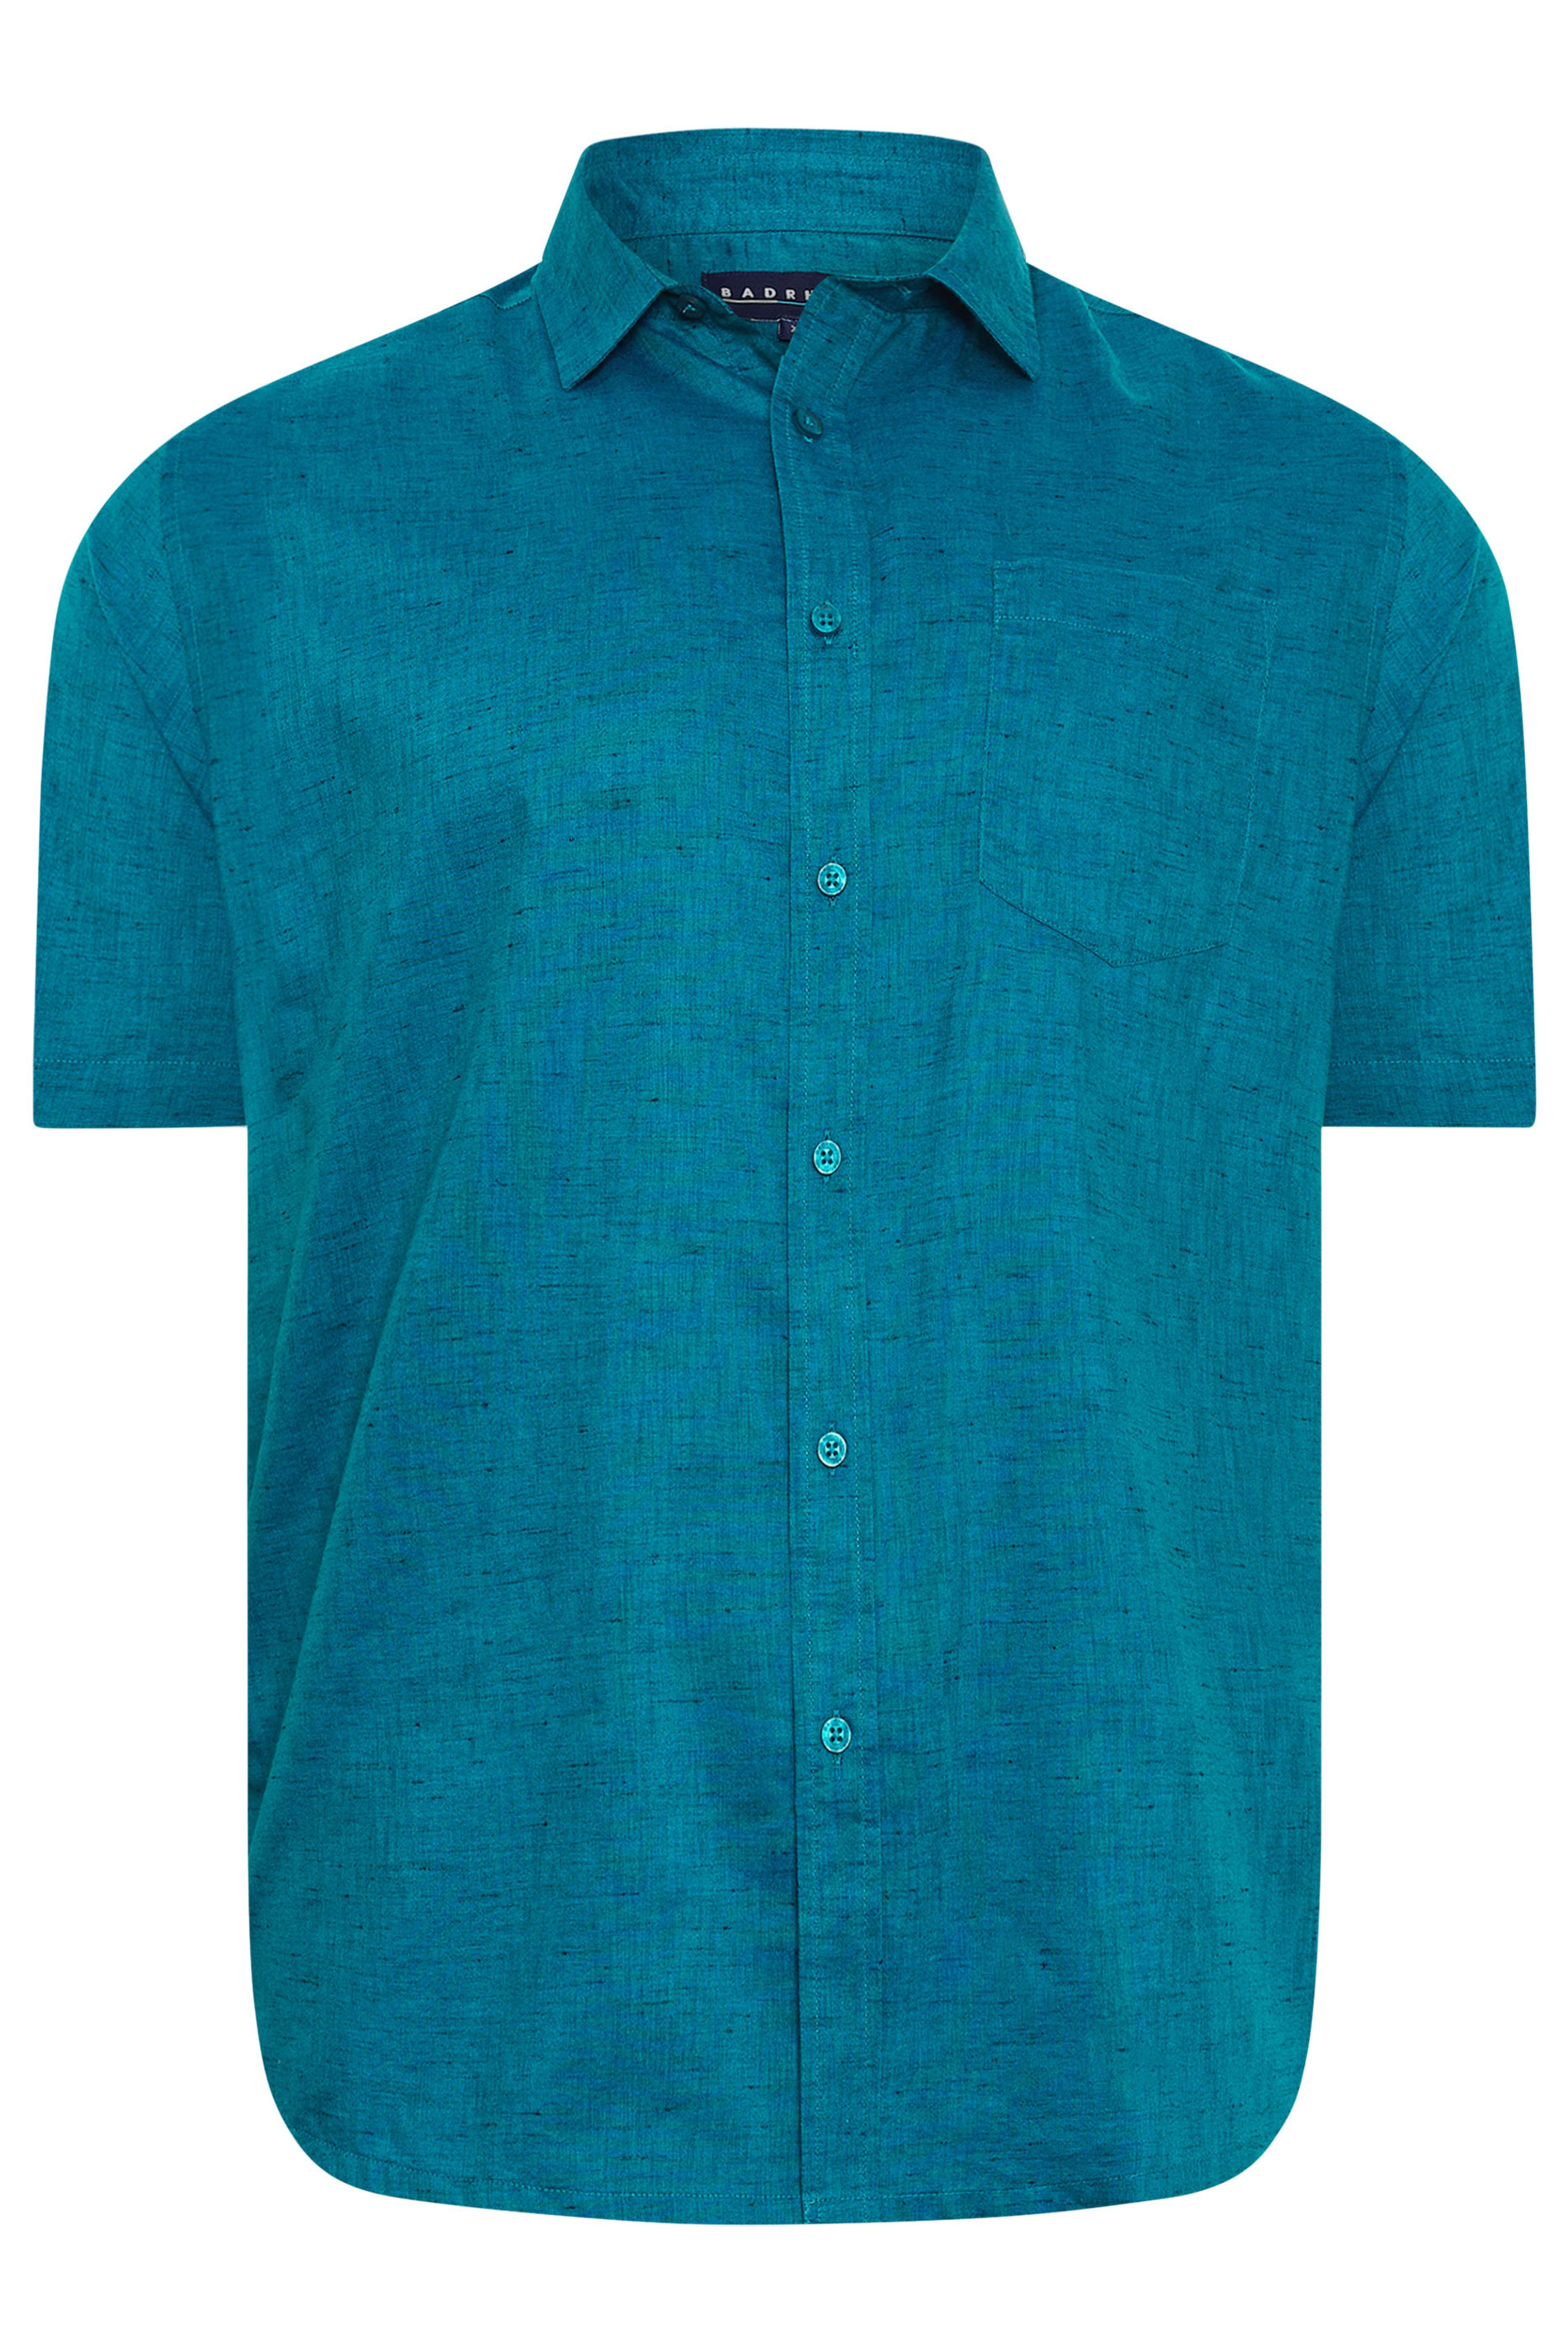 BadRhino Big & Tall Teal Blue Marl Short Sleeve Shirt | BadRhino 2